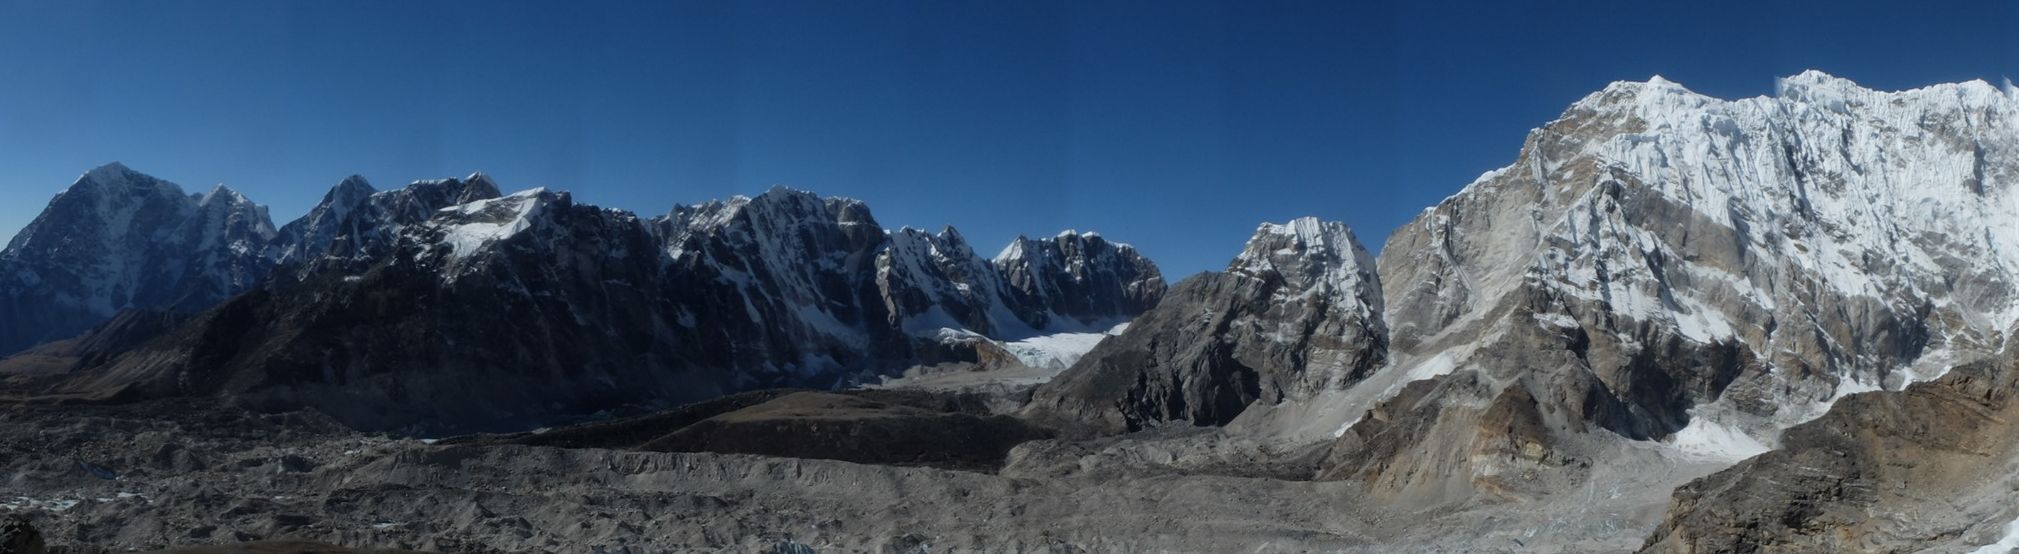 Chumbu ( 6,859m ) from Kallar Pattar